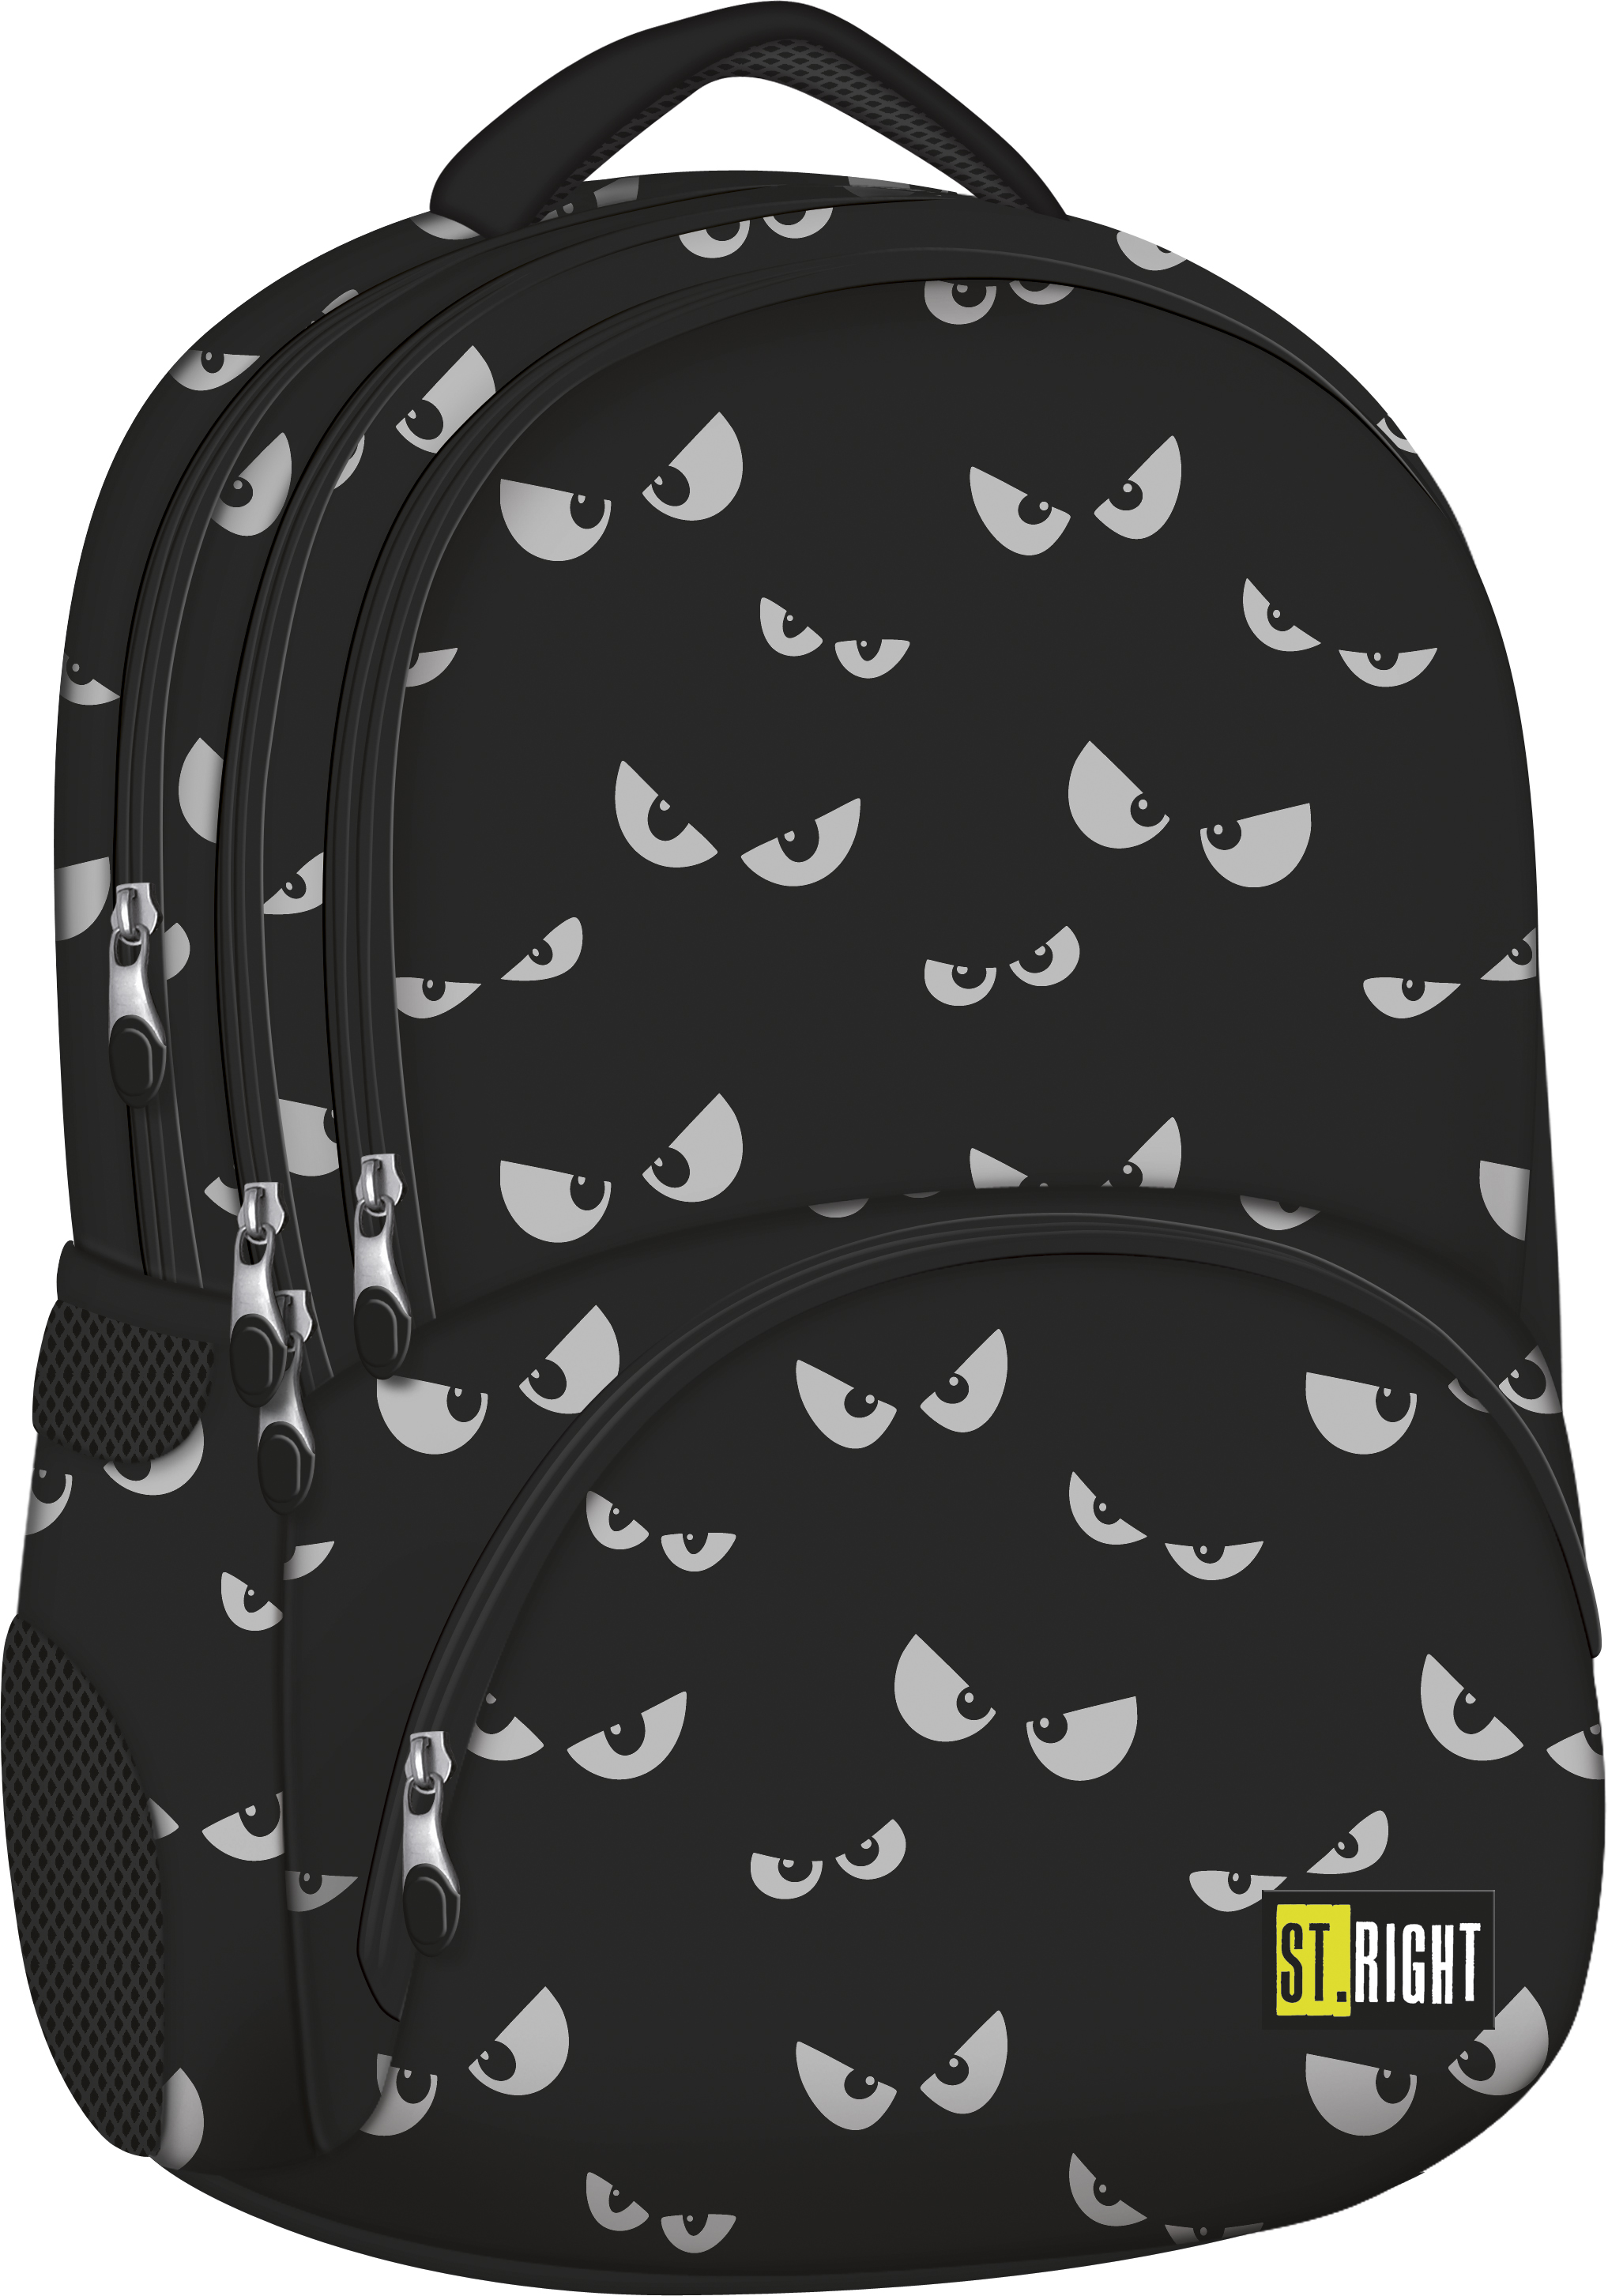 Schulrucksack Rucksack für Schule Oberstufe Mode & Accessoires Taschen Rucksäcke 